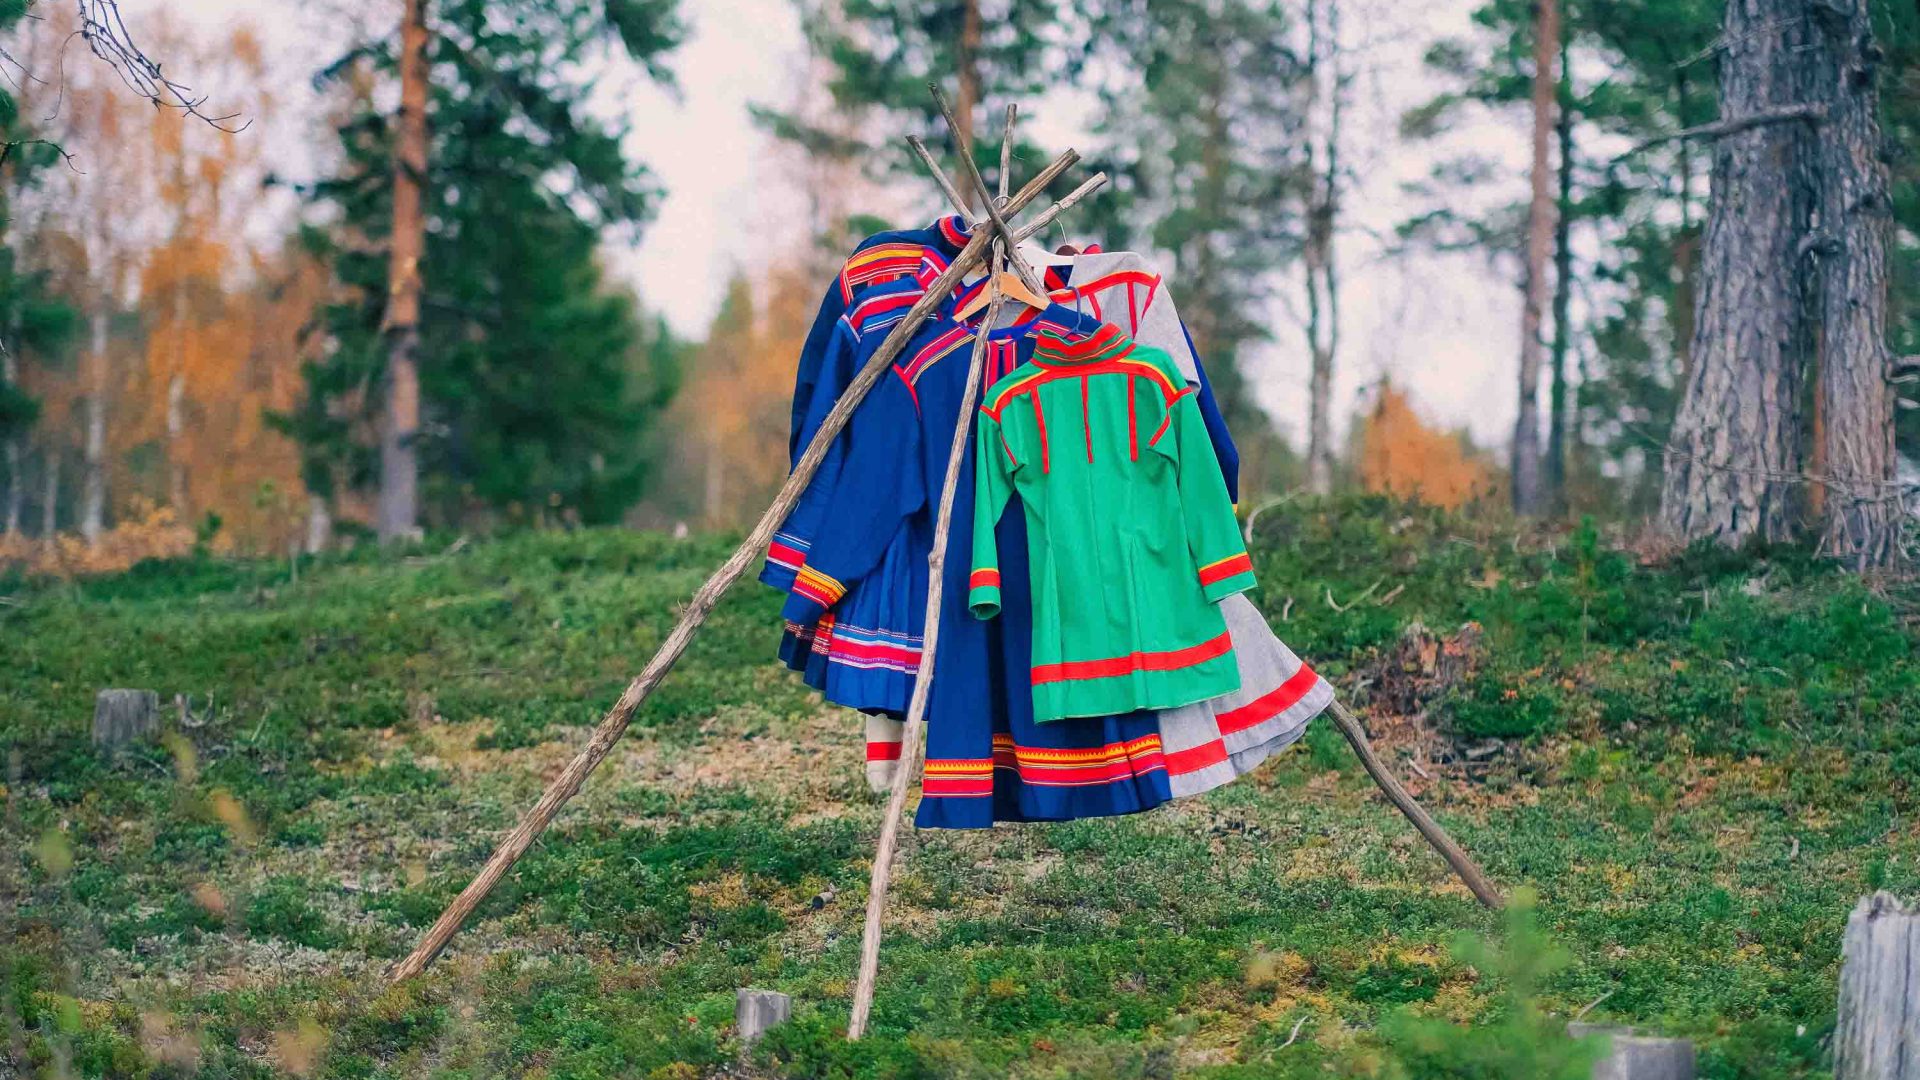 Sami designer dresses hang on a rack in the forest.